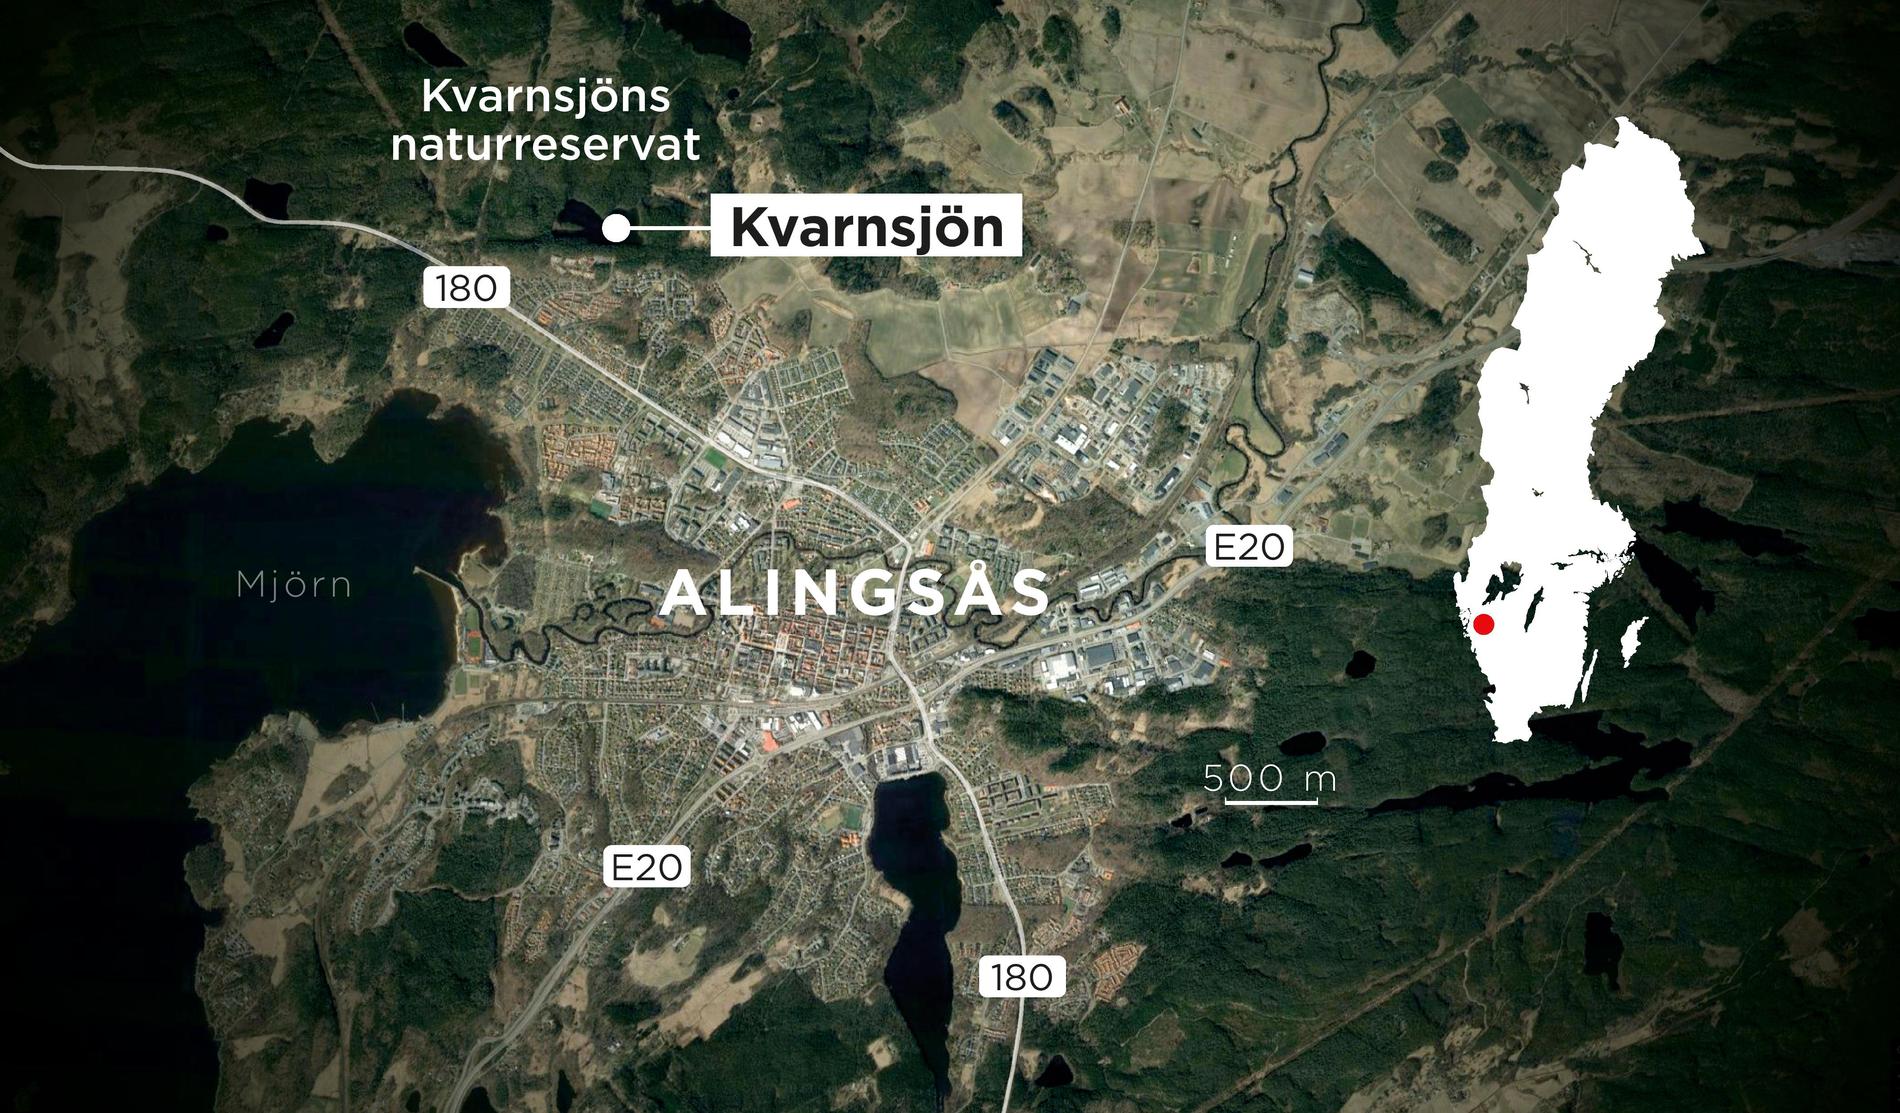 Dramat inträffade i utkanten av Alingsås.